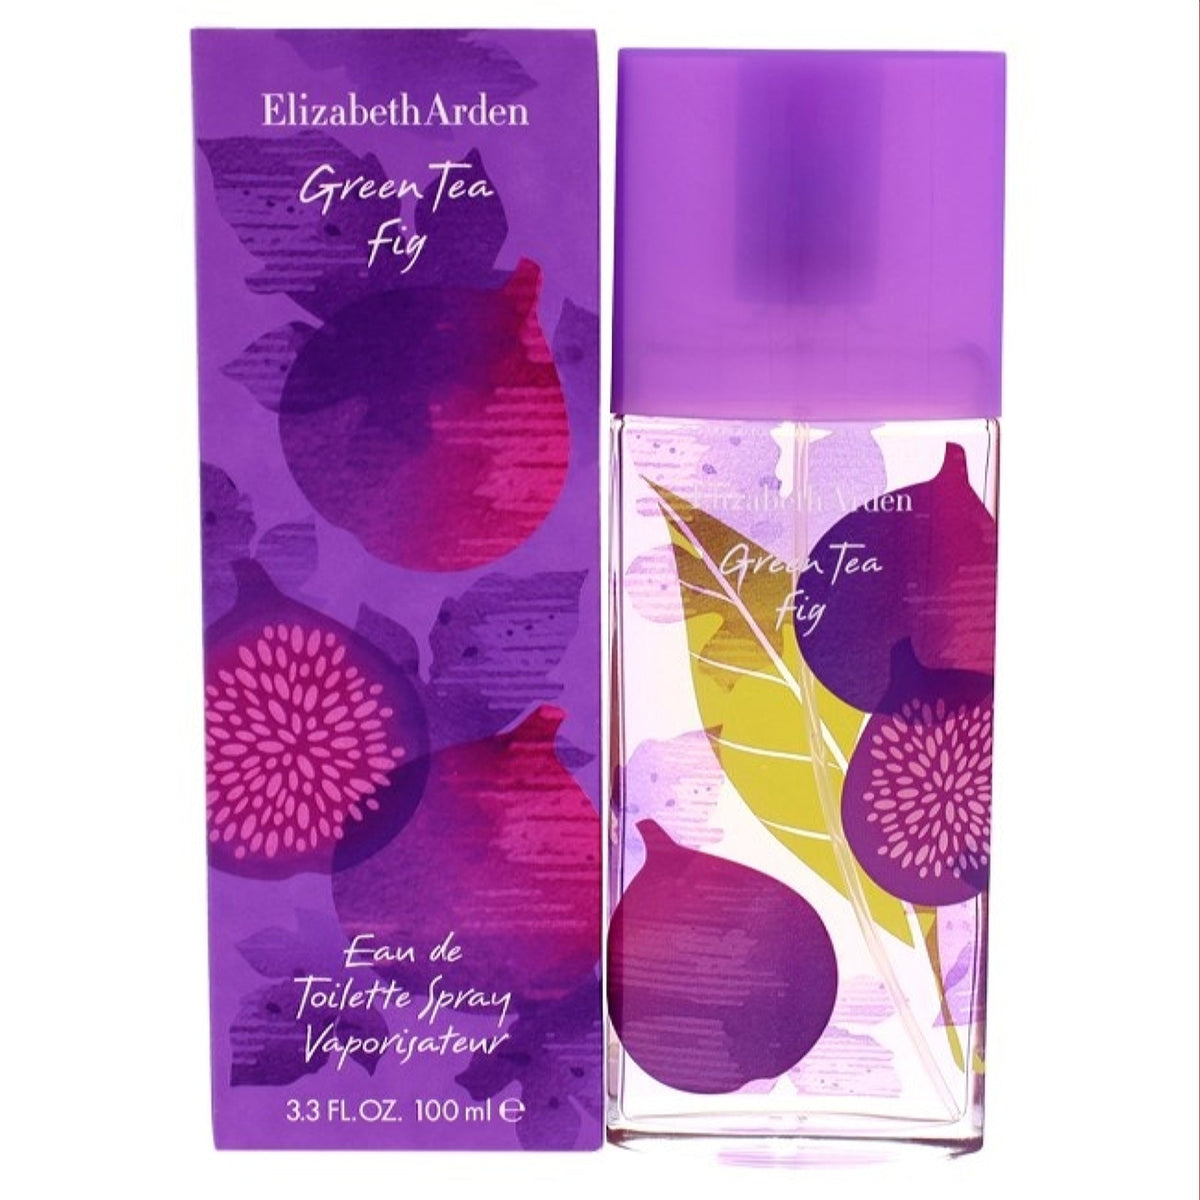 Green Tea Fig Elizabeth Arden Edt Spray 3.3 Oz (100 Ml) For Women  A0111603